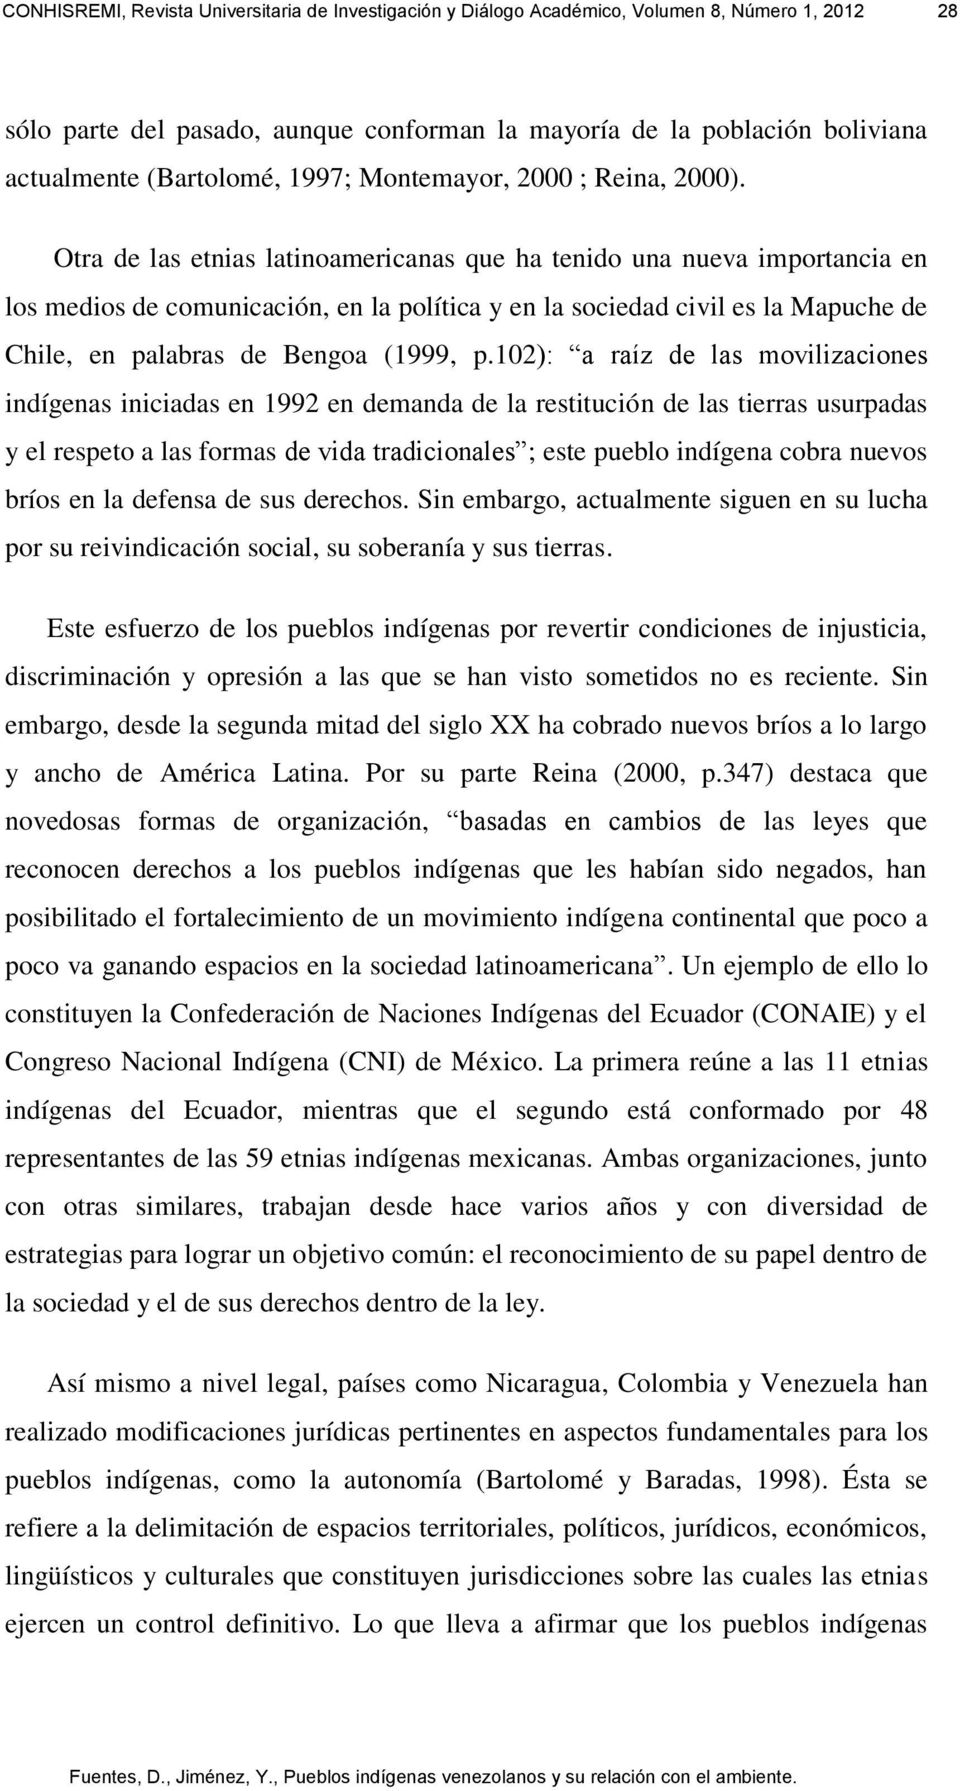 Otra de las etnias latinoamericanas que ha tenido una nueva importancia en los medios de comunicación, en la política y en la sociedad civil es la Mapuche de Chile, en palabras de Bengoa (1999, p.